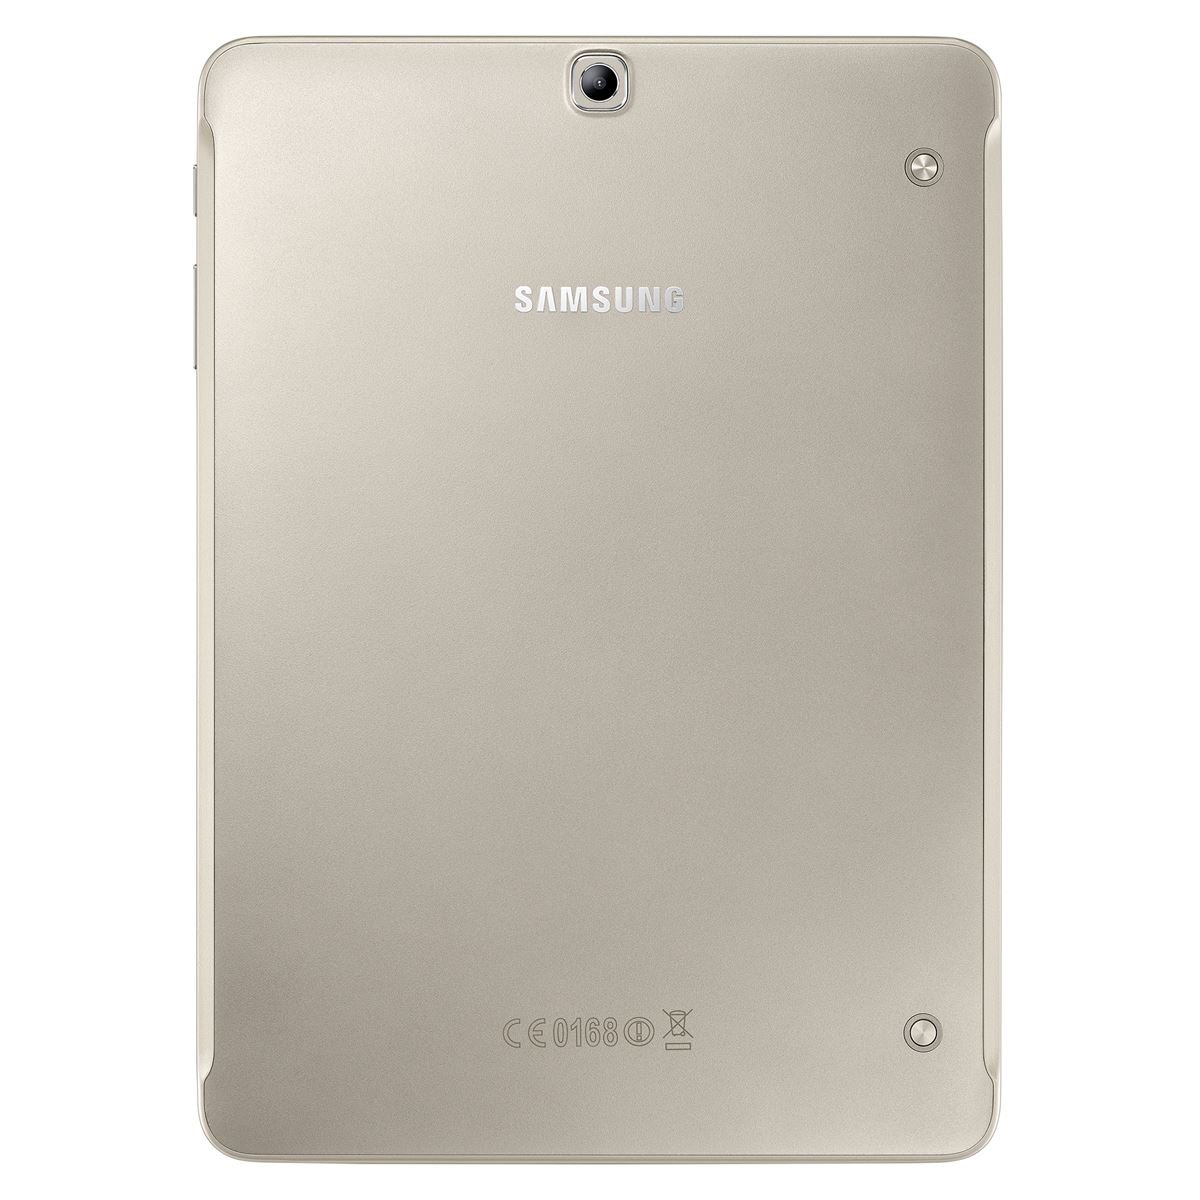 Samsung Galaxy Tab S2 32GB Gold